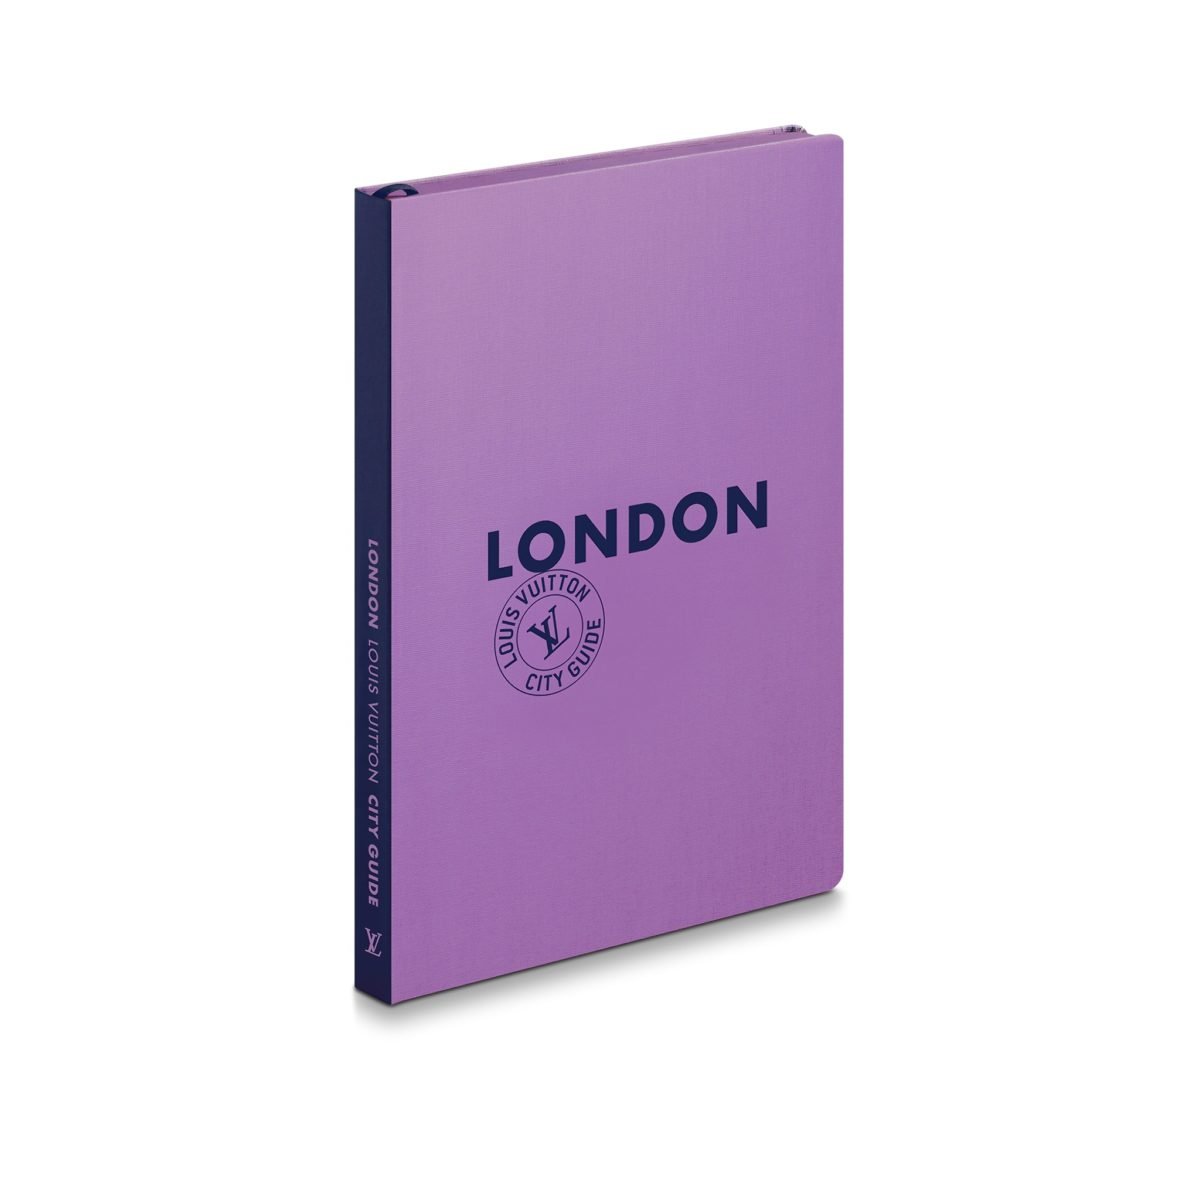 Louis Vuitton - London - City Guide 2010: 9782917781203: Books 